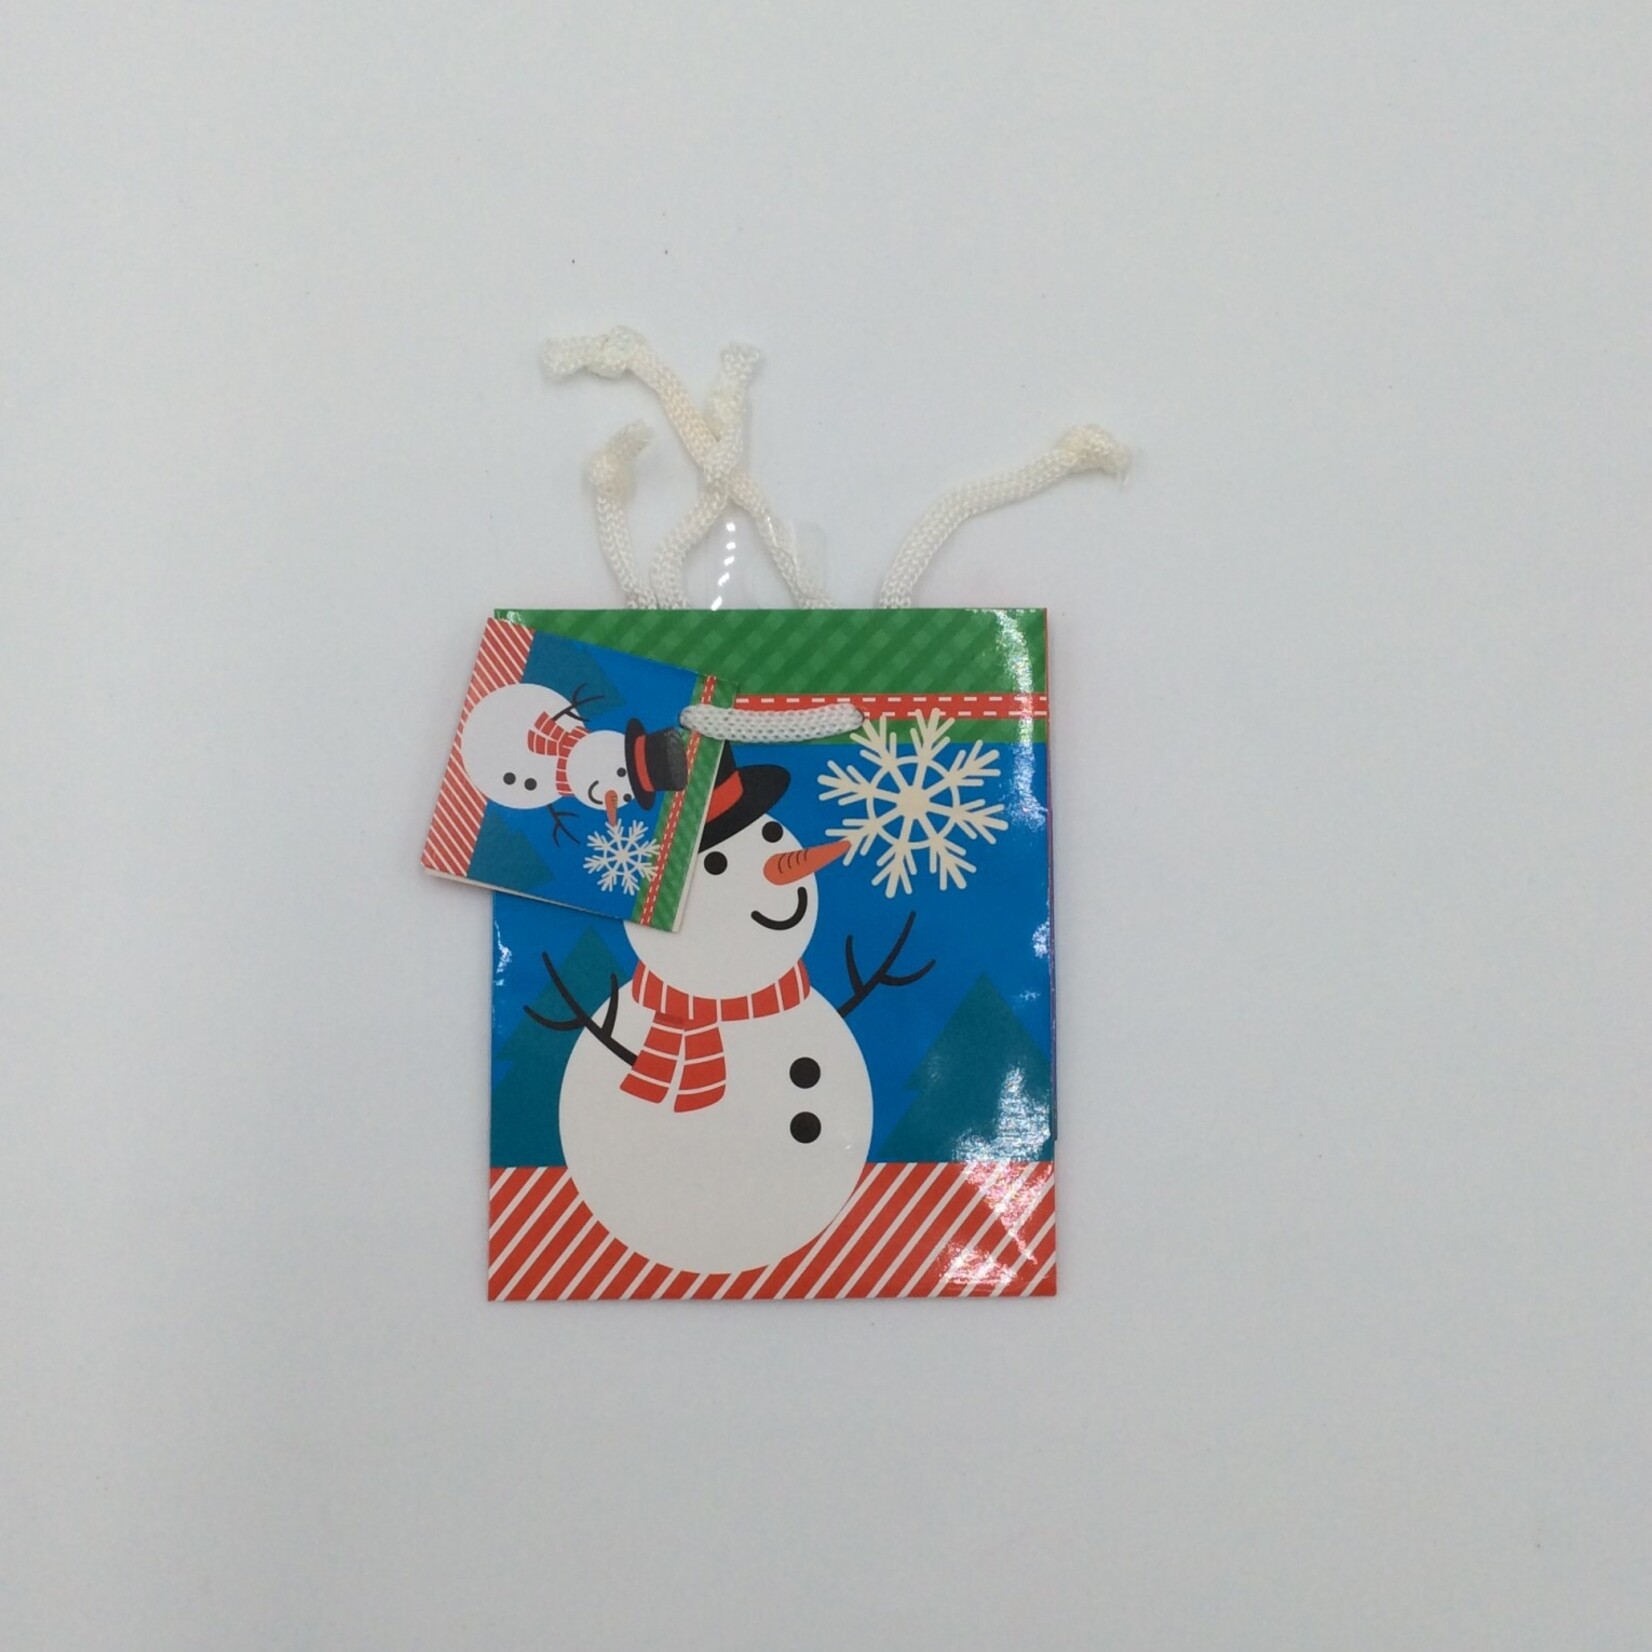 Christmas Printed Gift Bags 5x4”